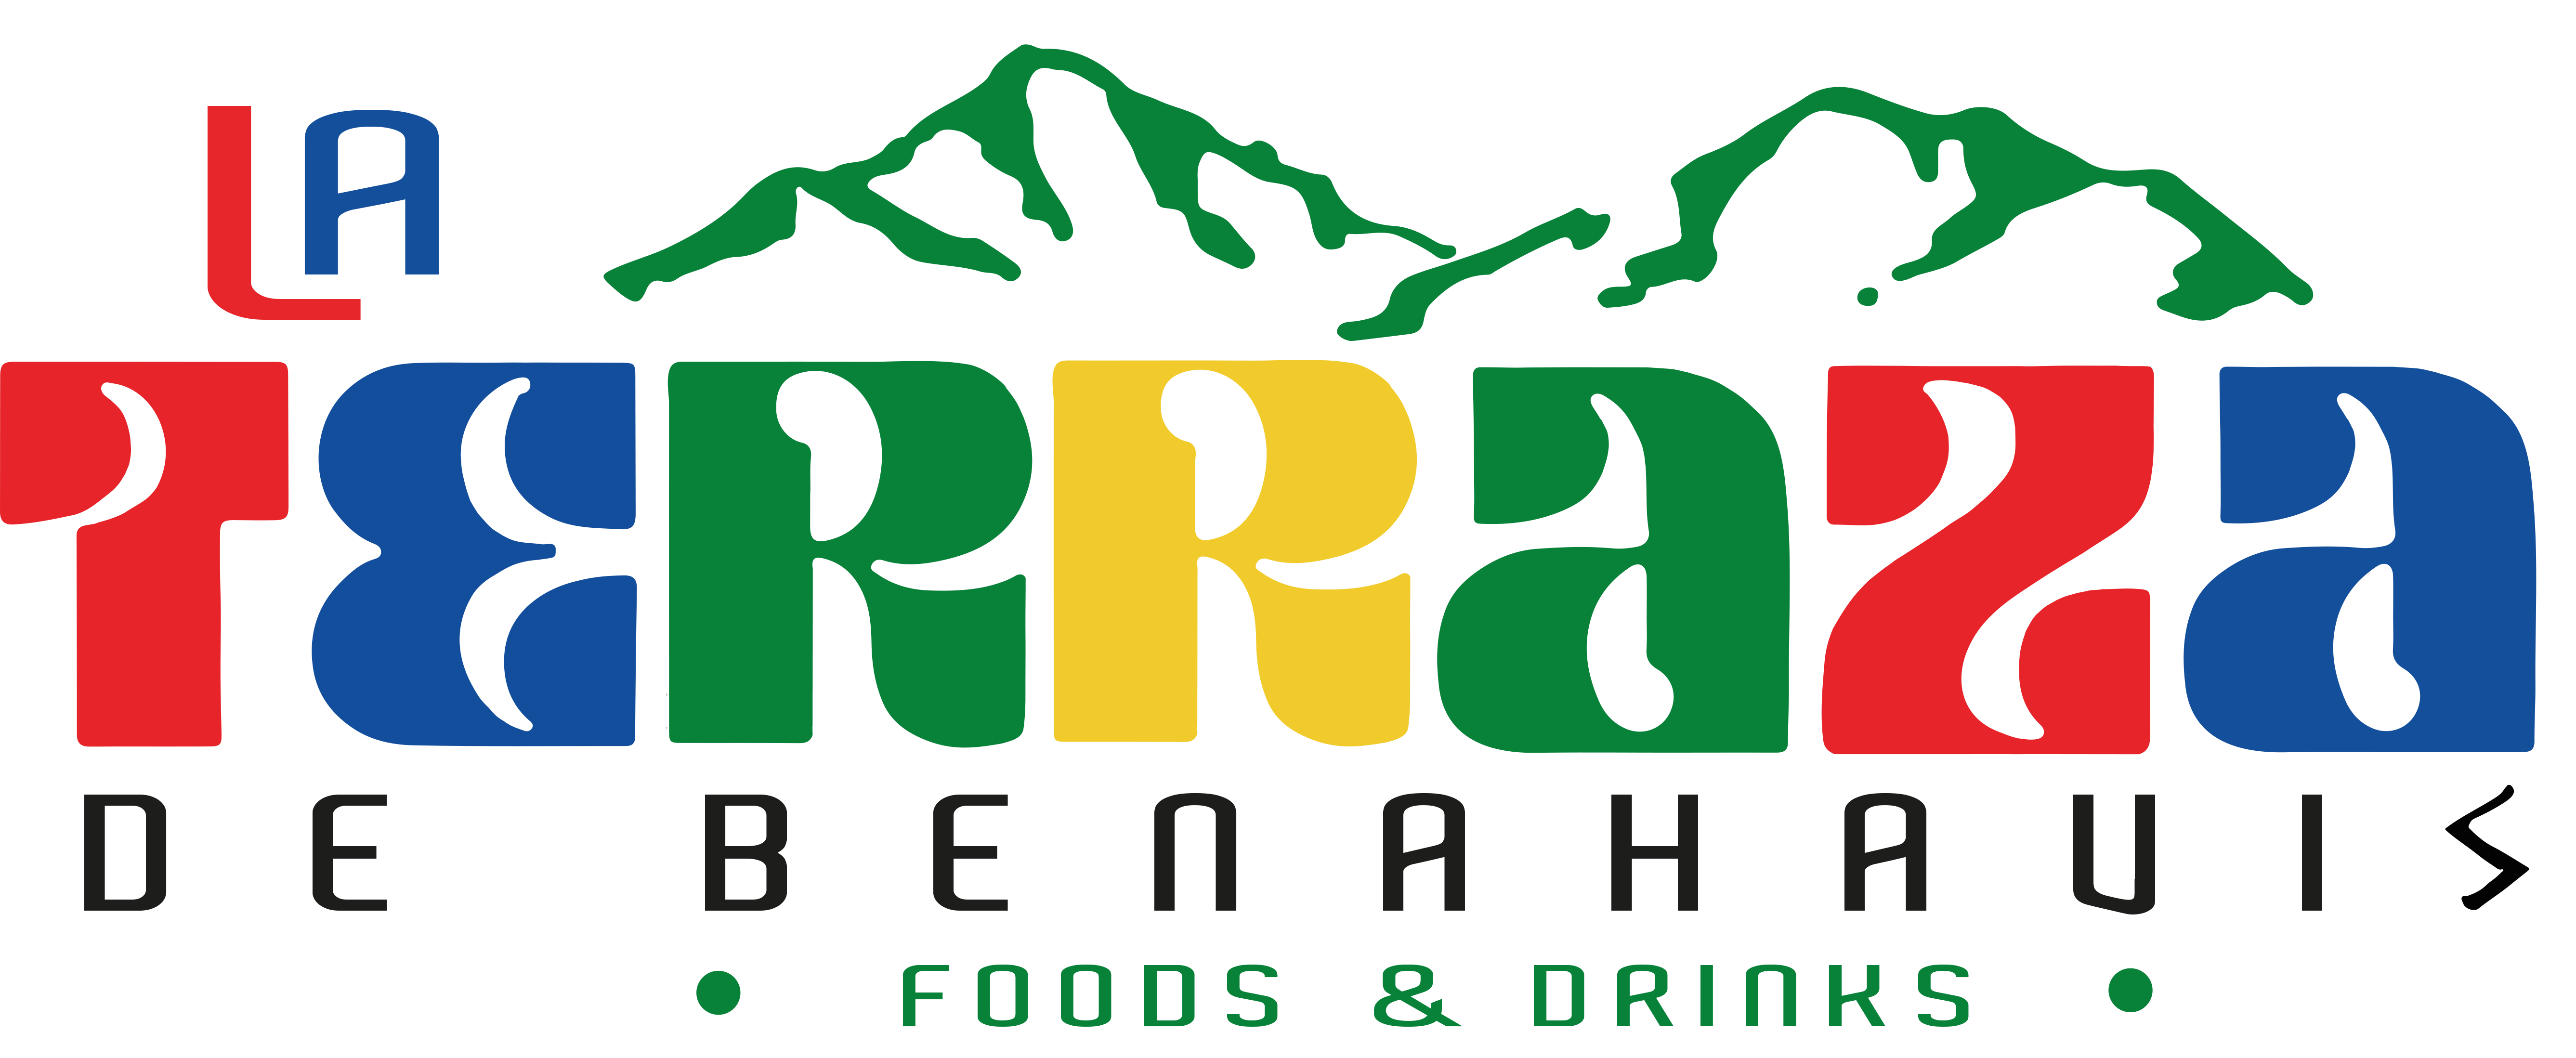 La Terraza de Benahavis Foods & Drinks